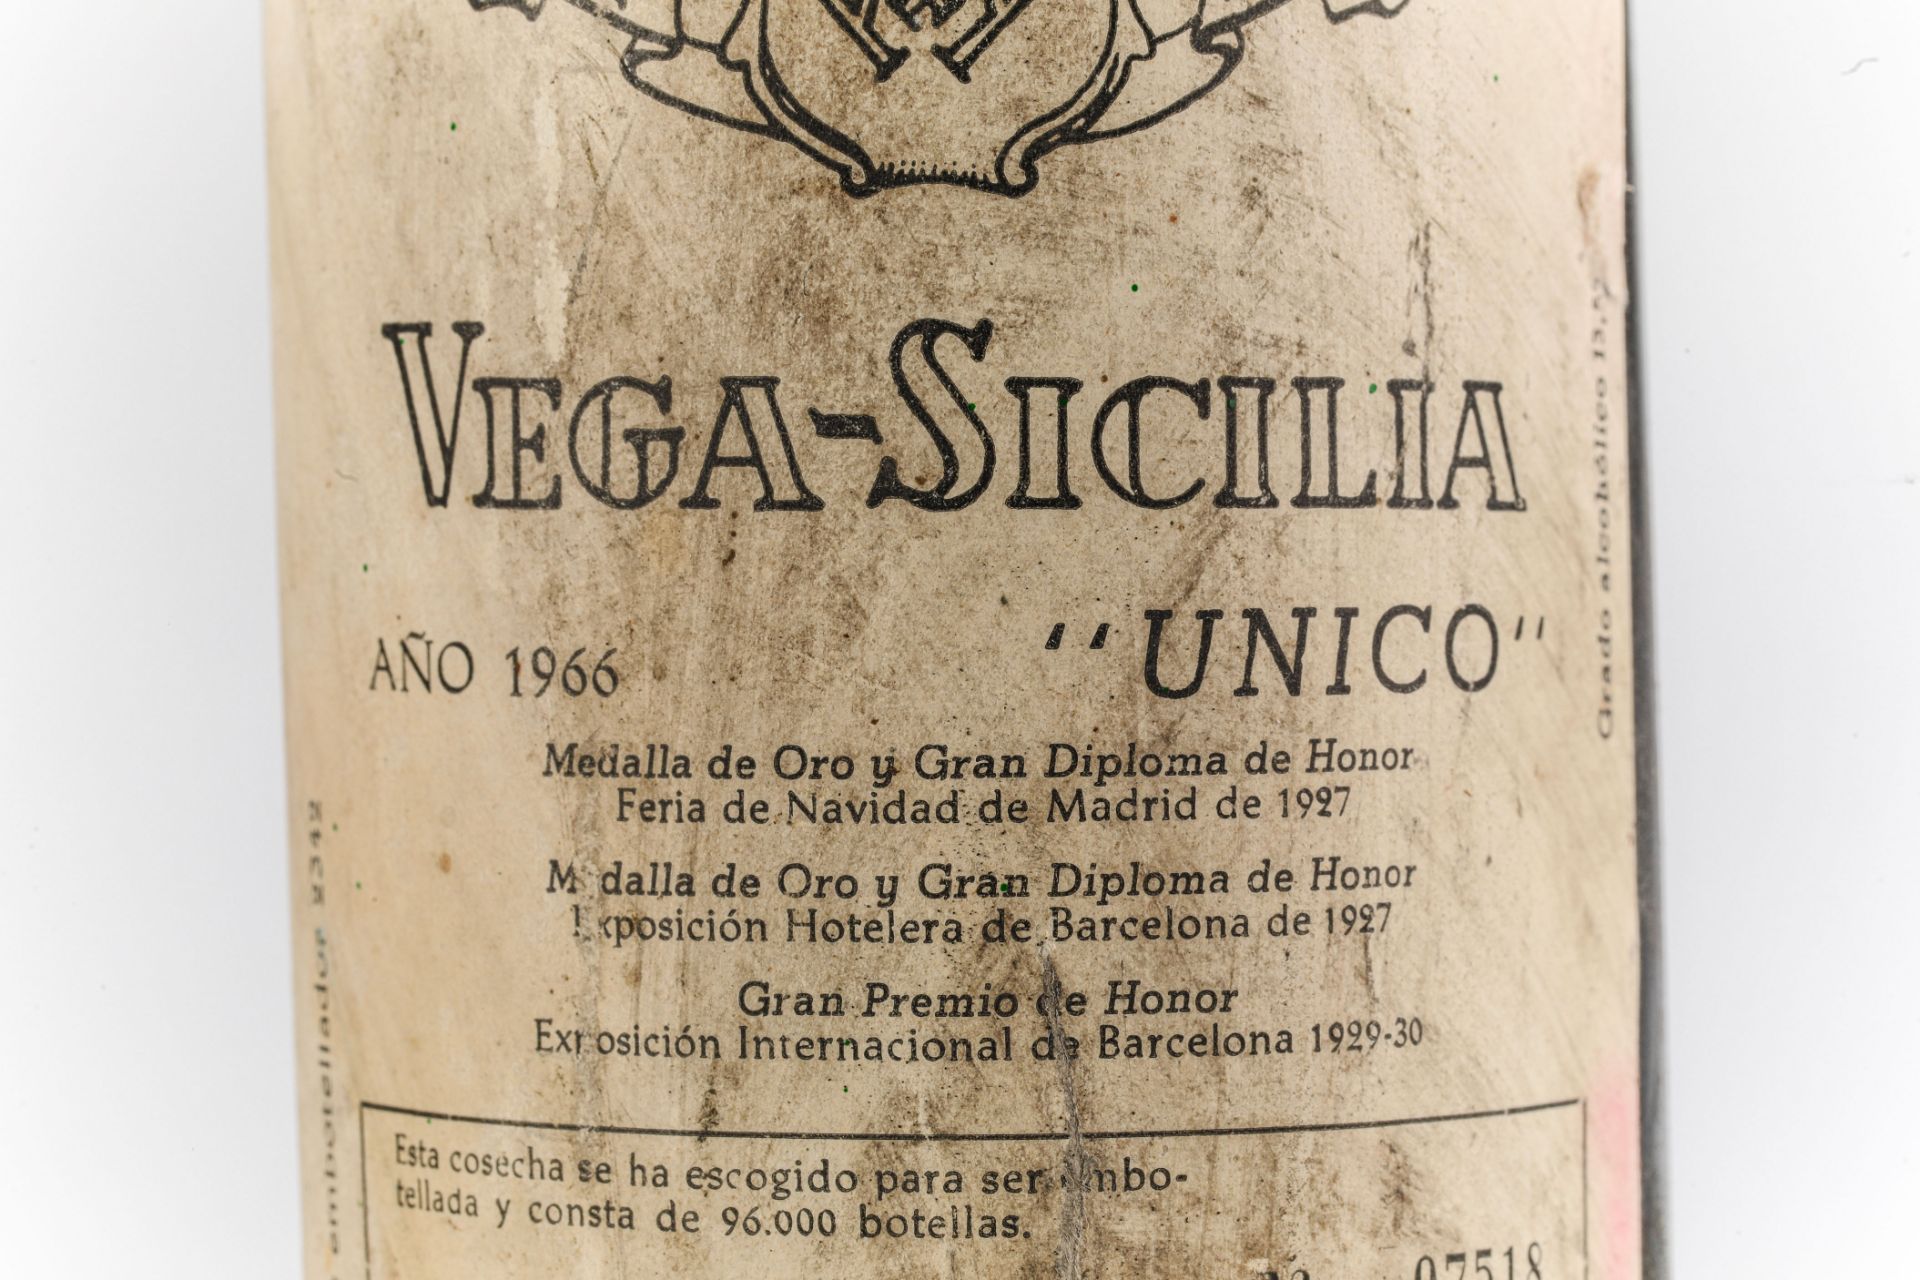 VEGA SICILIA UNICO. 1966. Ribera del Duero. Bouteille N°07518 sur production de 96 000 bouteilles. - Image 3 of 4